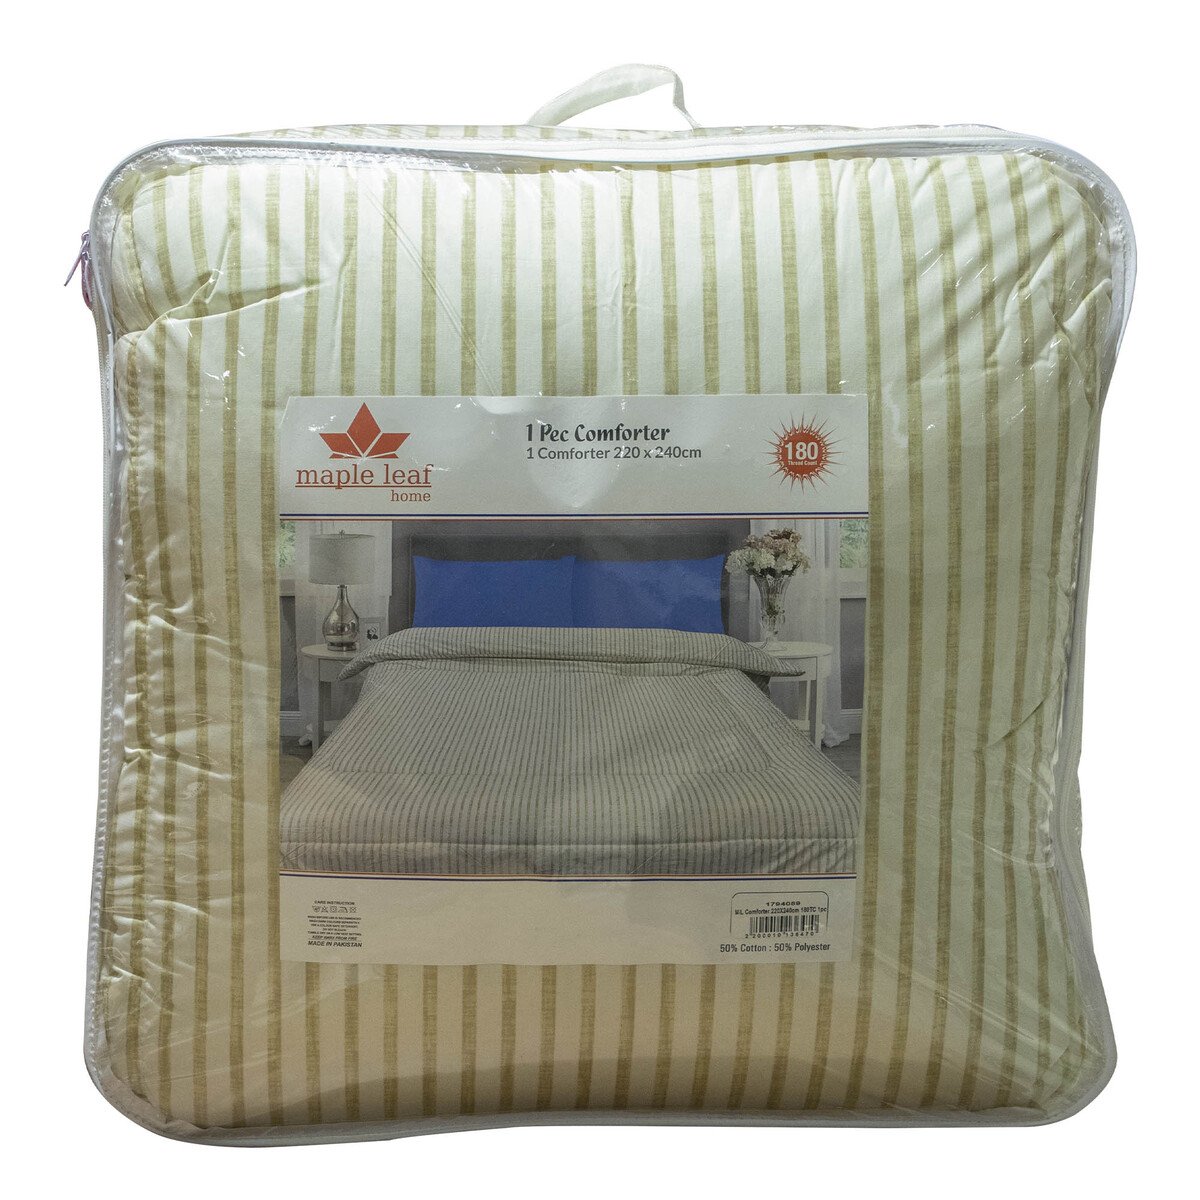 Maple Leaf Comforter 220x240cm 180 Thread Count